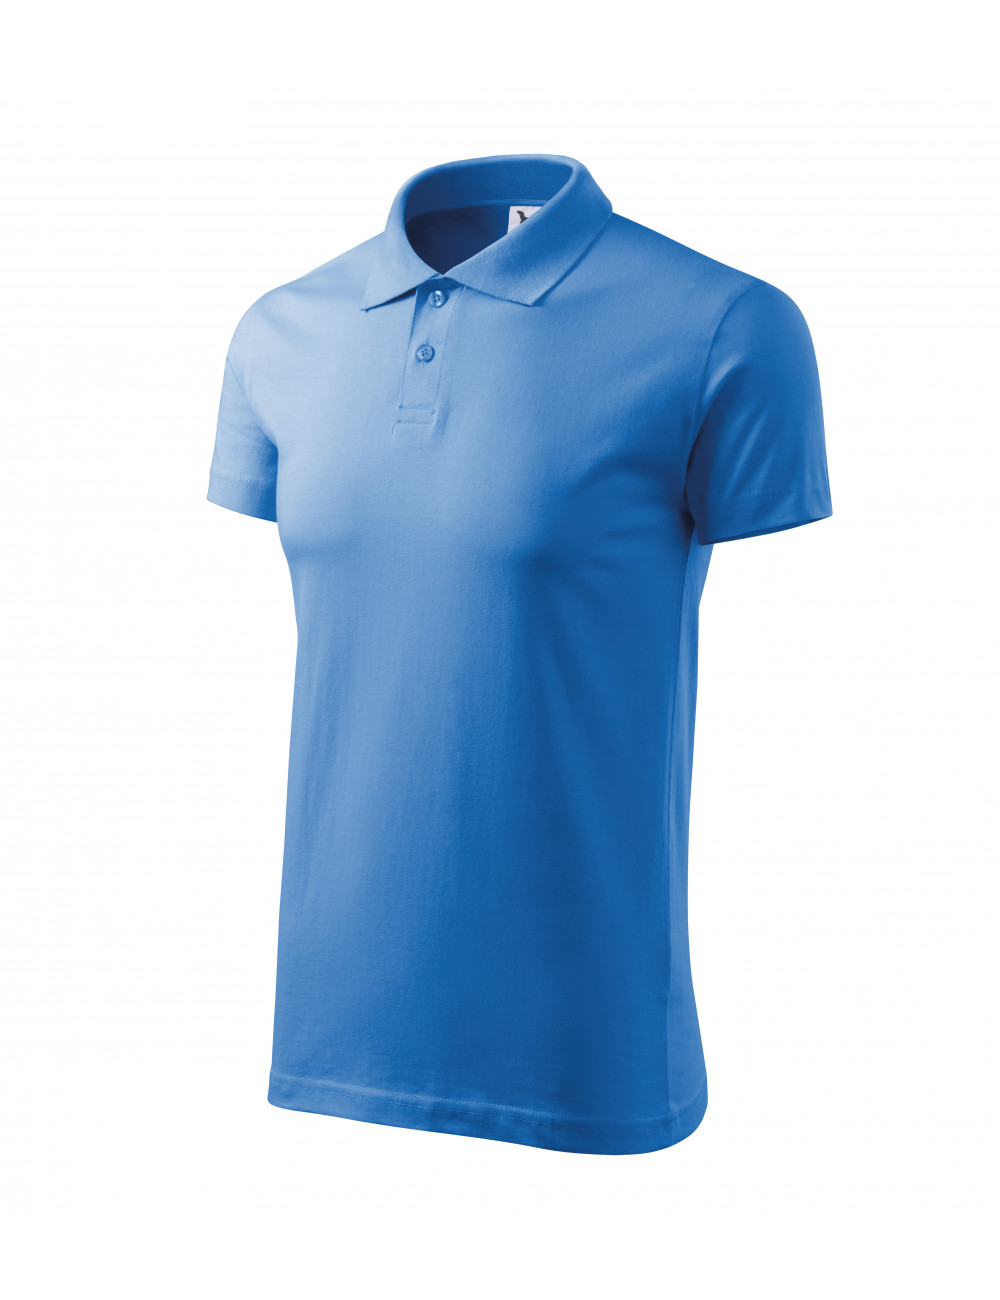 Men`s single j polo shirt. 202 azure Adler Malfini